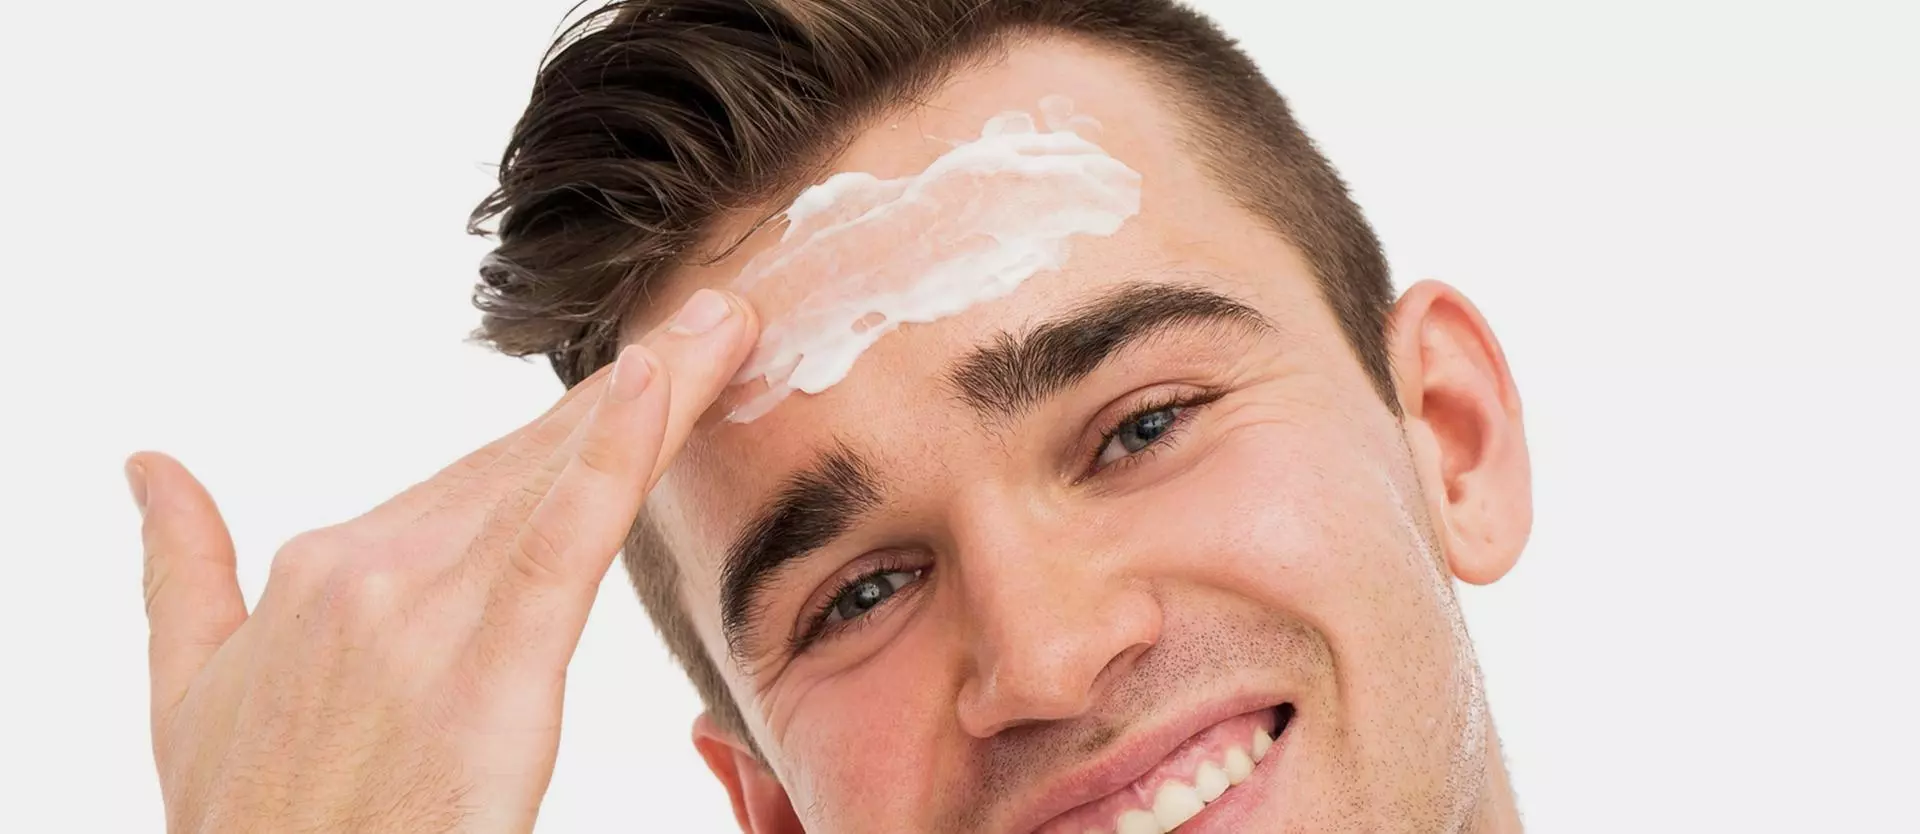 5 Summer Skin Care Tips for Men